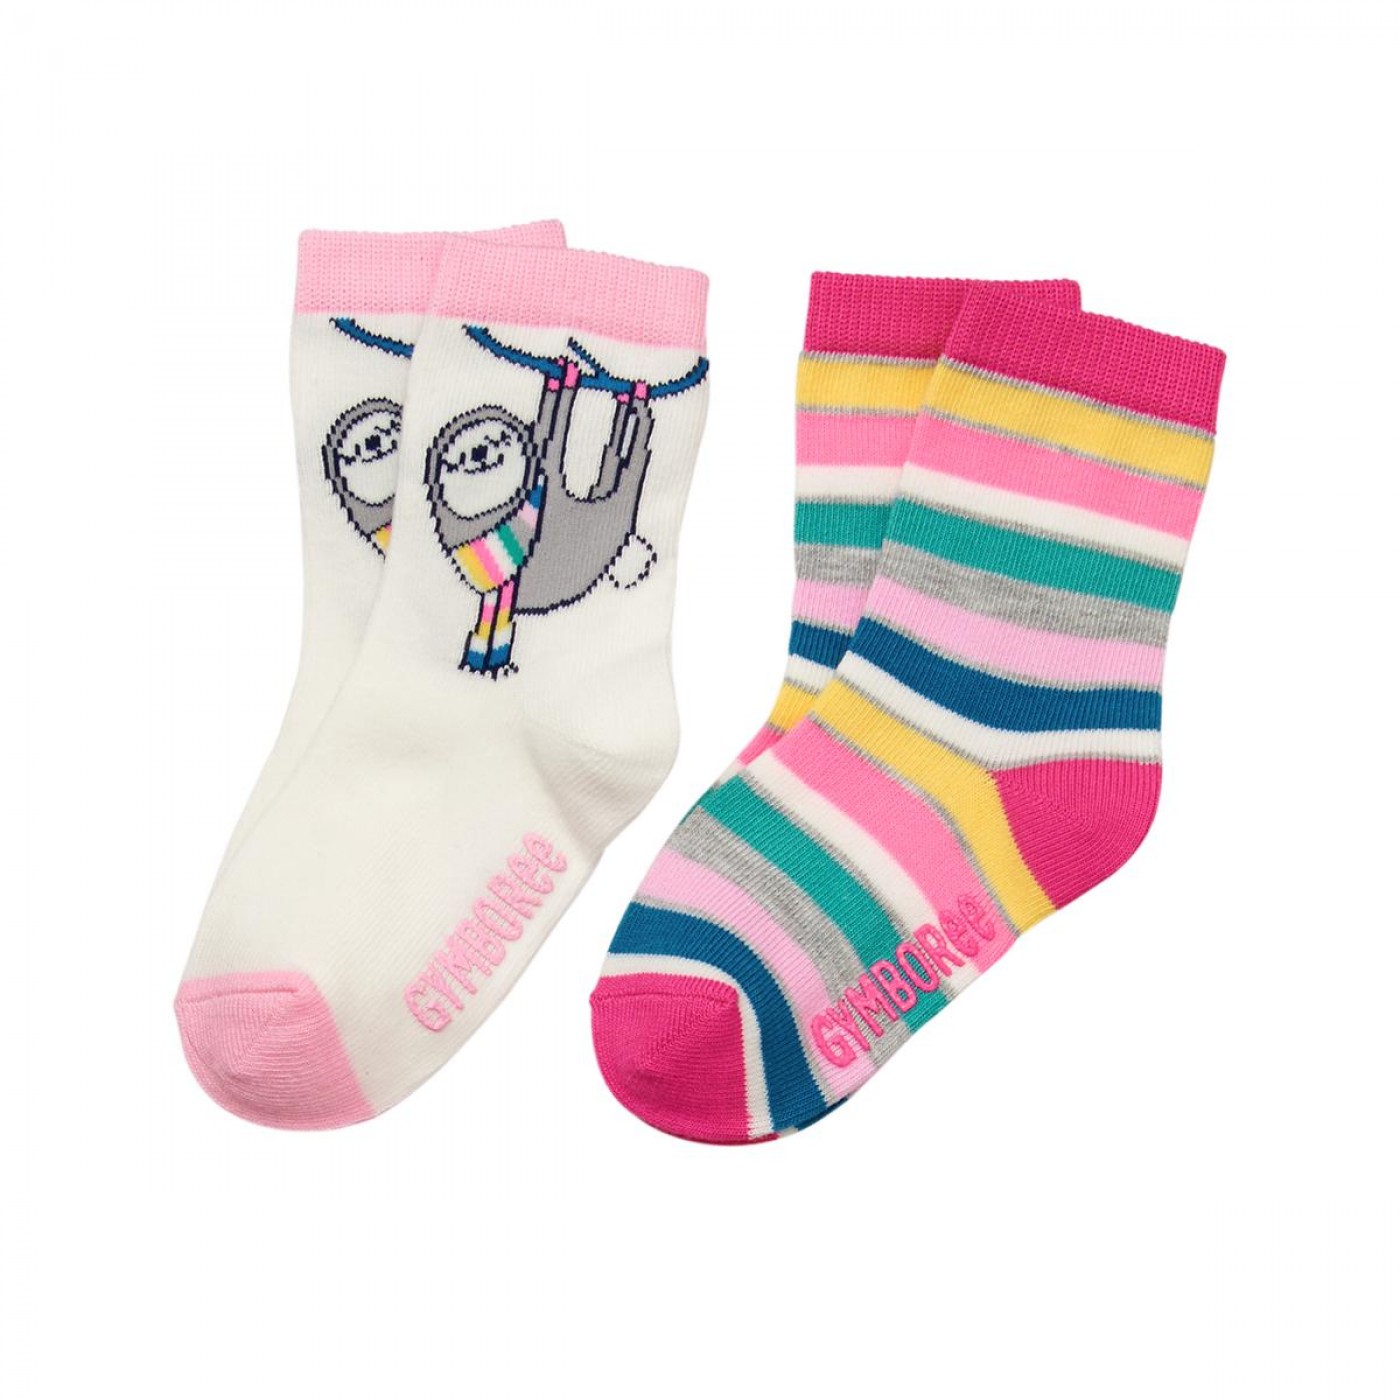 樹懶彩虹條紋襪兩件組